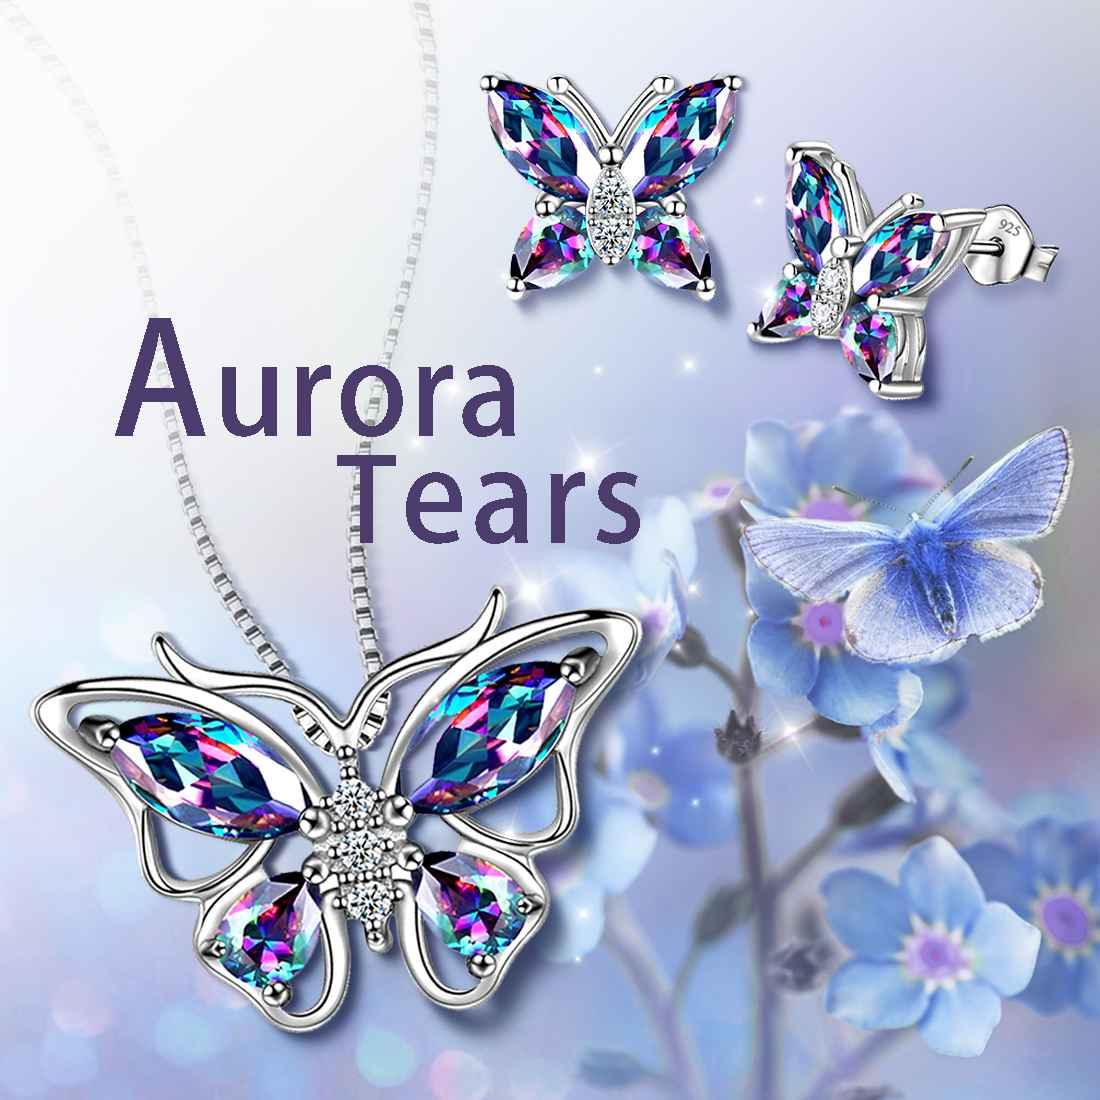 Butterfly Mystic Rainbow Topaz Jewelry Sets Sterling Silver - Jewelry Set - Aurora Tears Jewelry